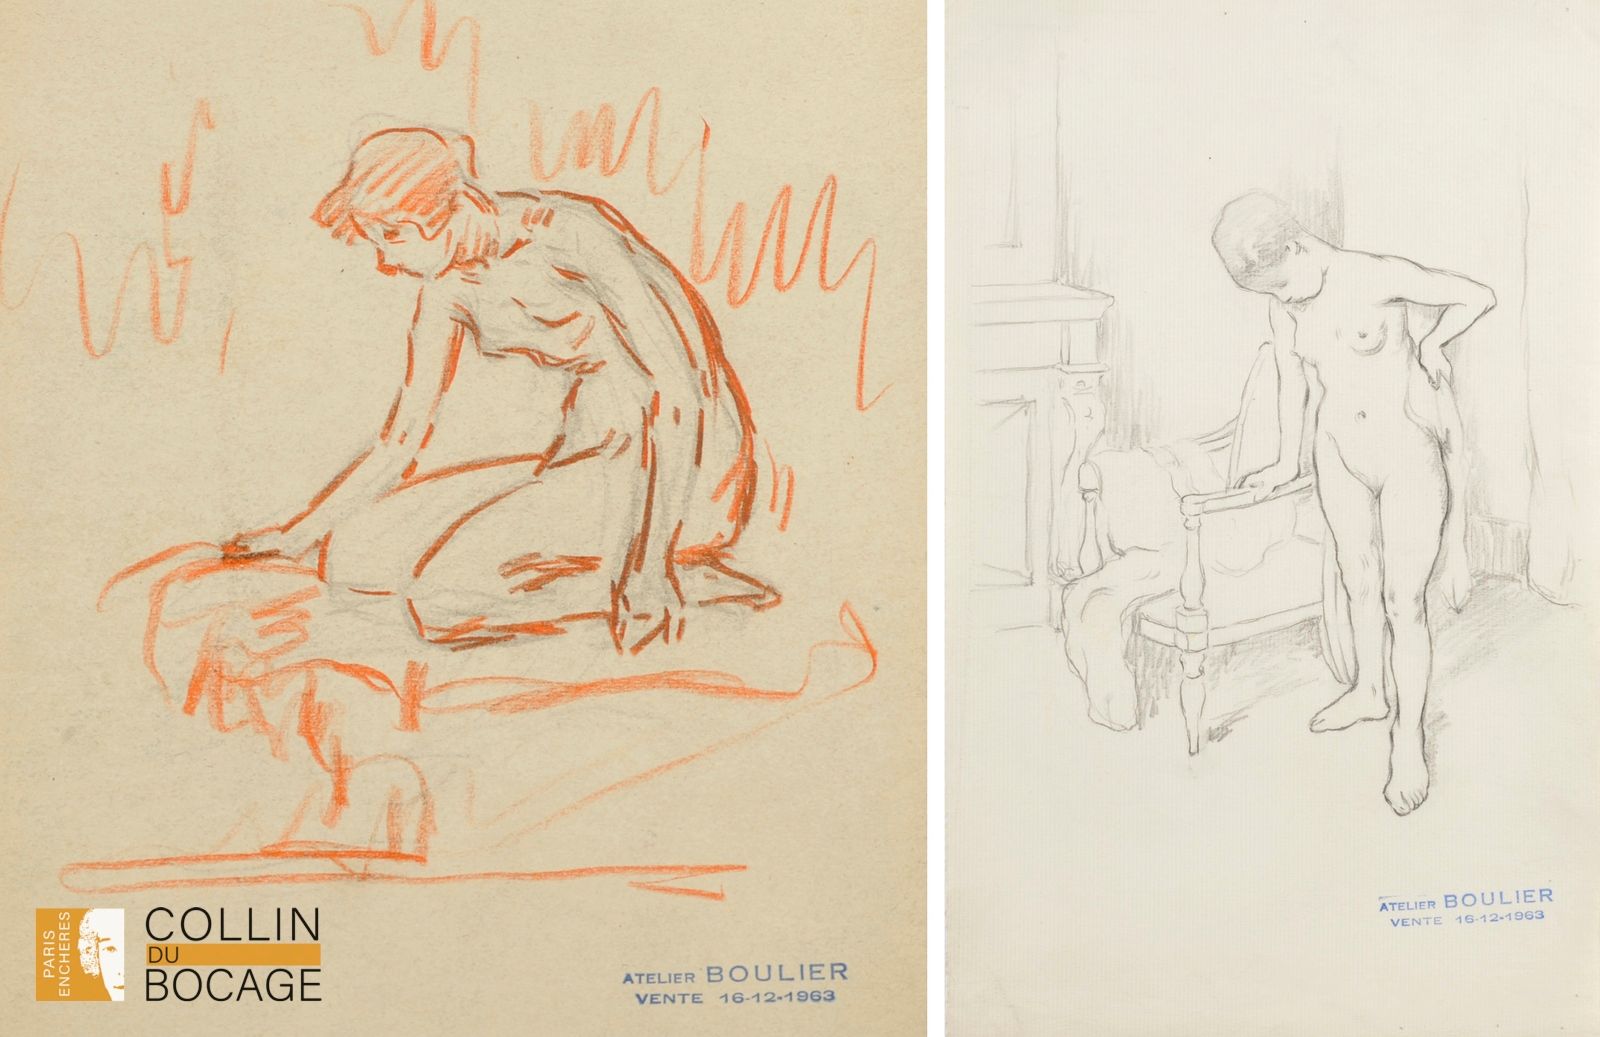 Null 吕西安-布利埃（1882-1963 年）

跪着的裸体女人 
卡片上的炭笔和红铅笔
工作室销售印章
24 x 21 厘米
折叠

拿毛巾的裸女 
纸上&hellip;